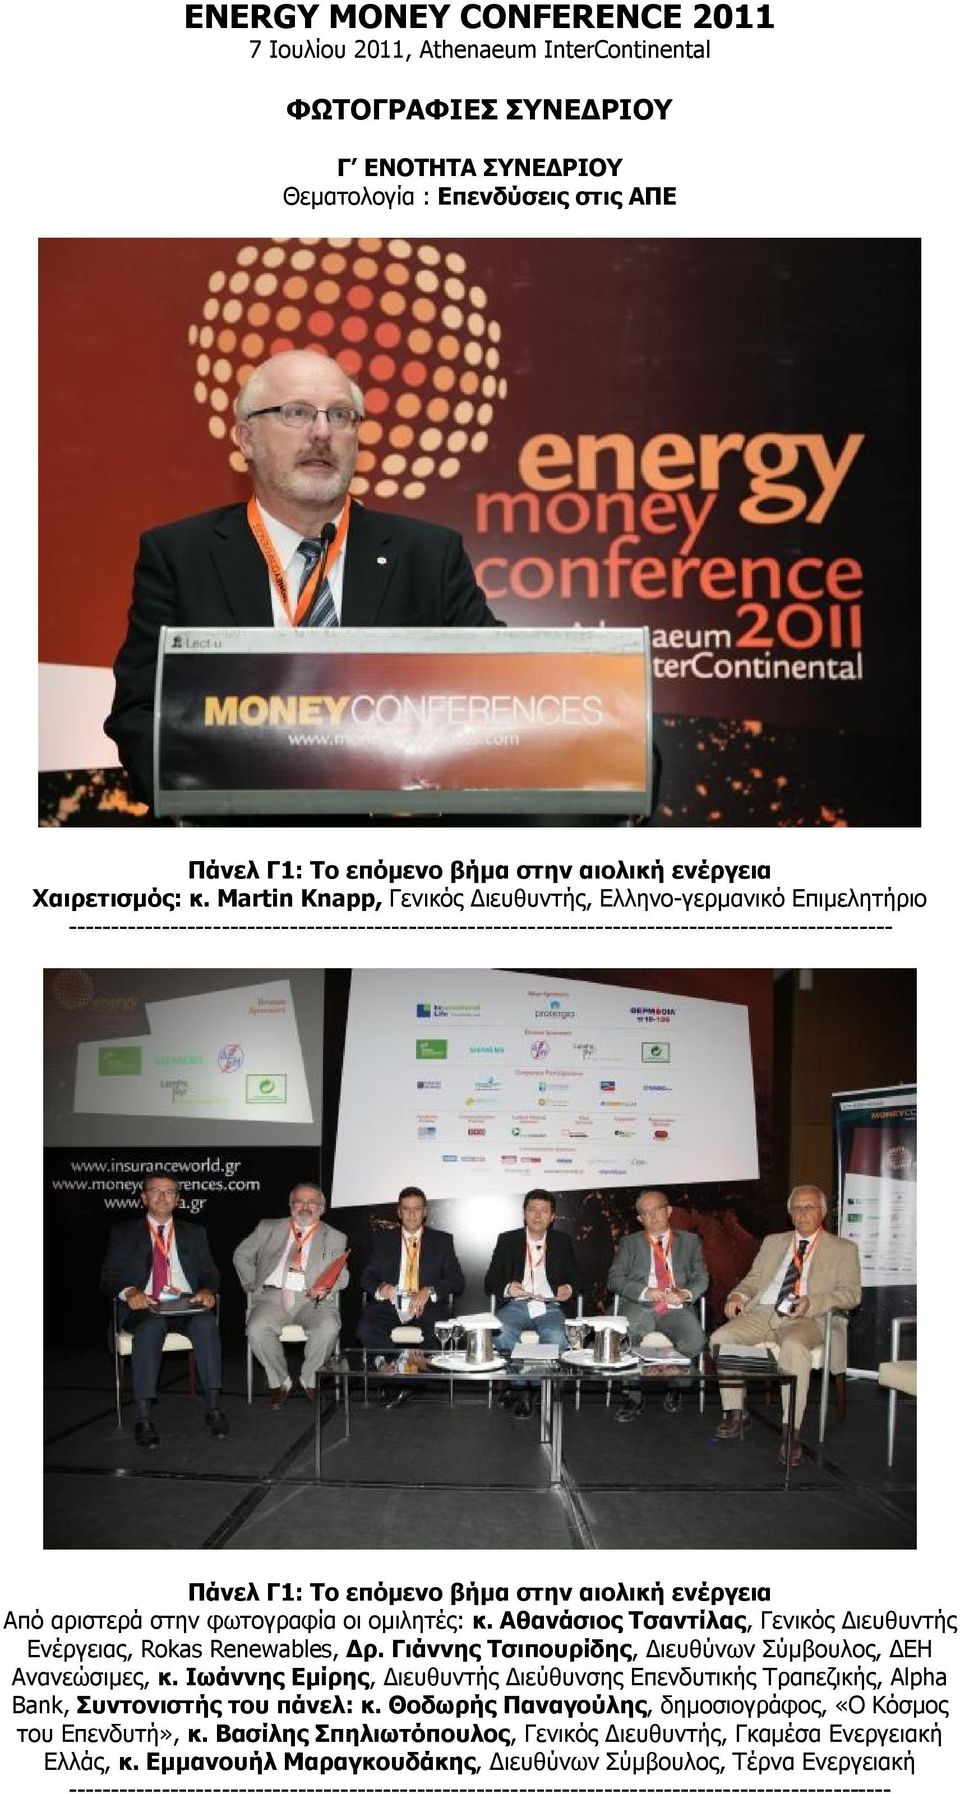 φωτογραφία οι ομιλητές: κ. Αθανάσιος Τσαντίλας, Γενικός Διευθυντής Ενέργειας, Rokas Renewables, Δρ. Γιάννης Τσιπουρίδης, Διευθύνων Σύμβουλος, ΔΕΗ Ανανεώσιμες, κ.